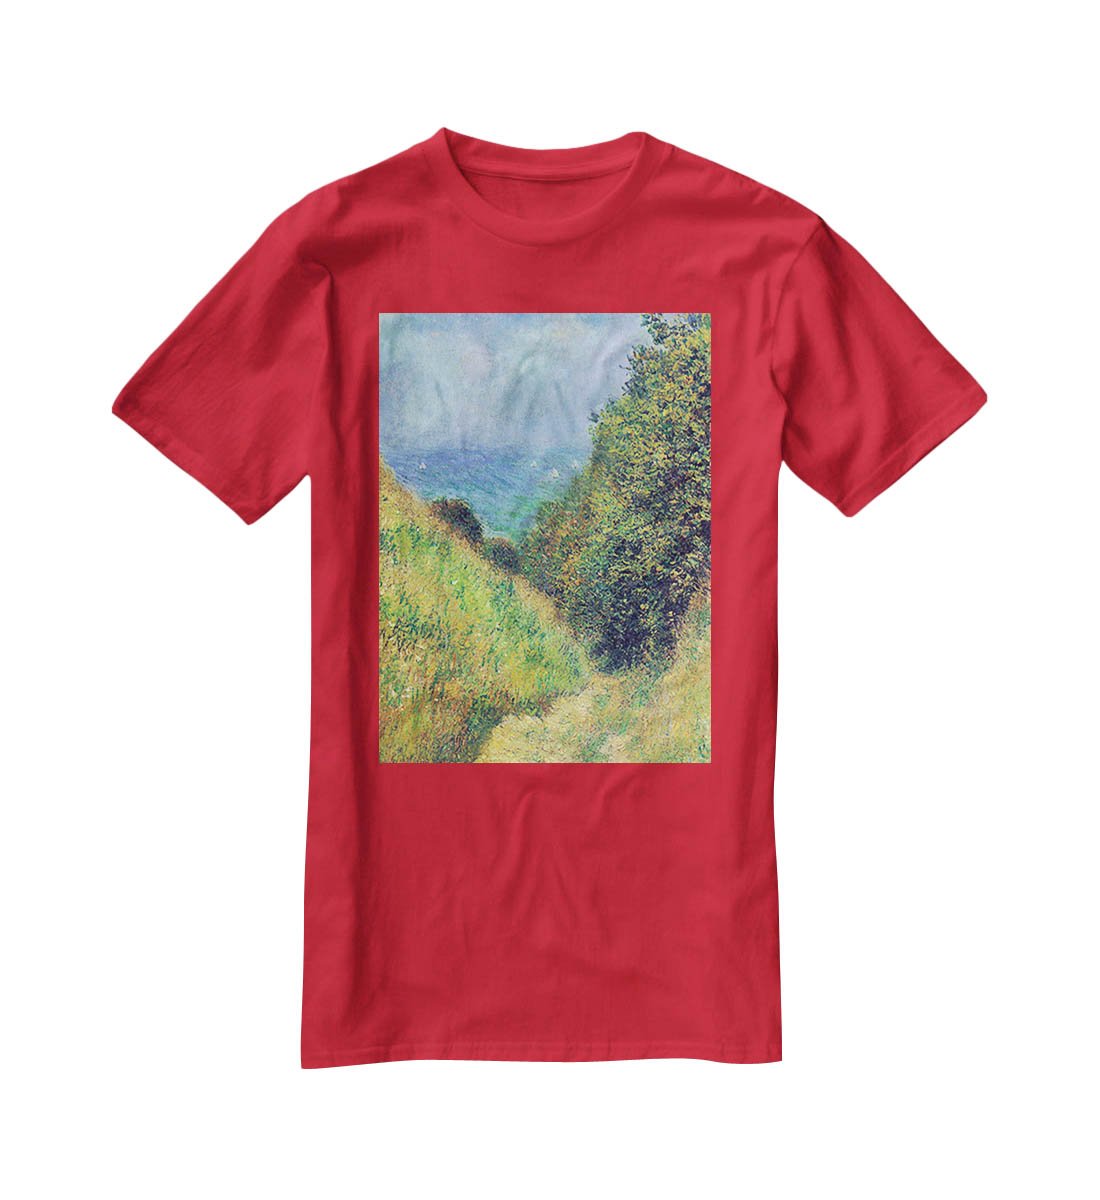 Pourville 2 by Monet T-Shirt - Canvas Art Rocks - 4